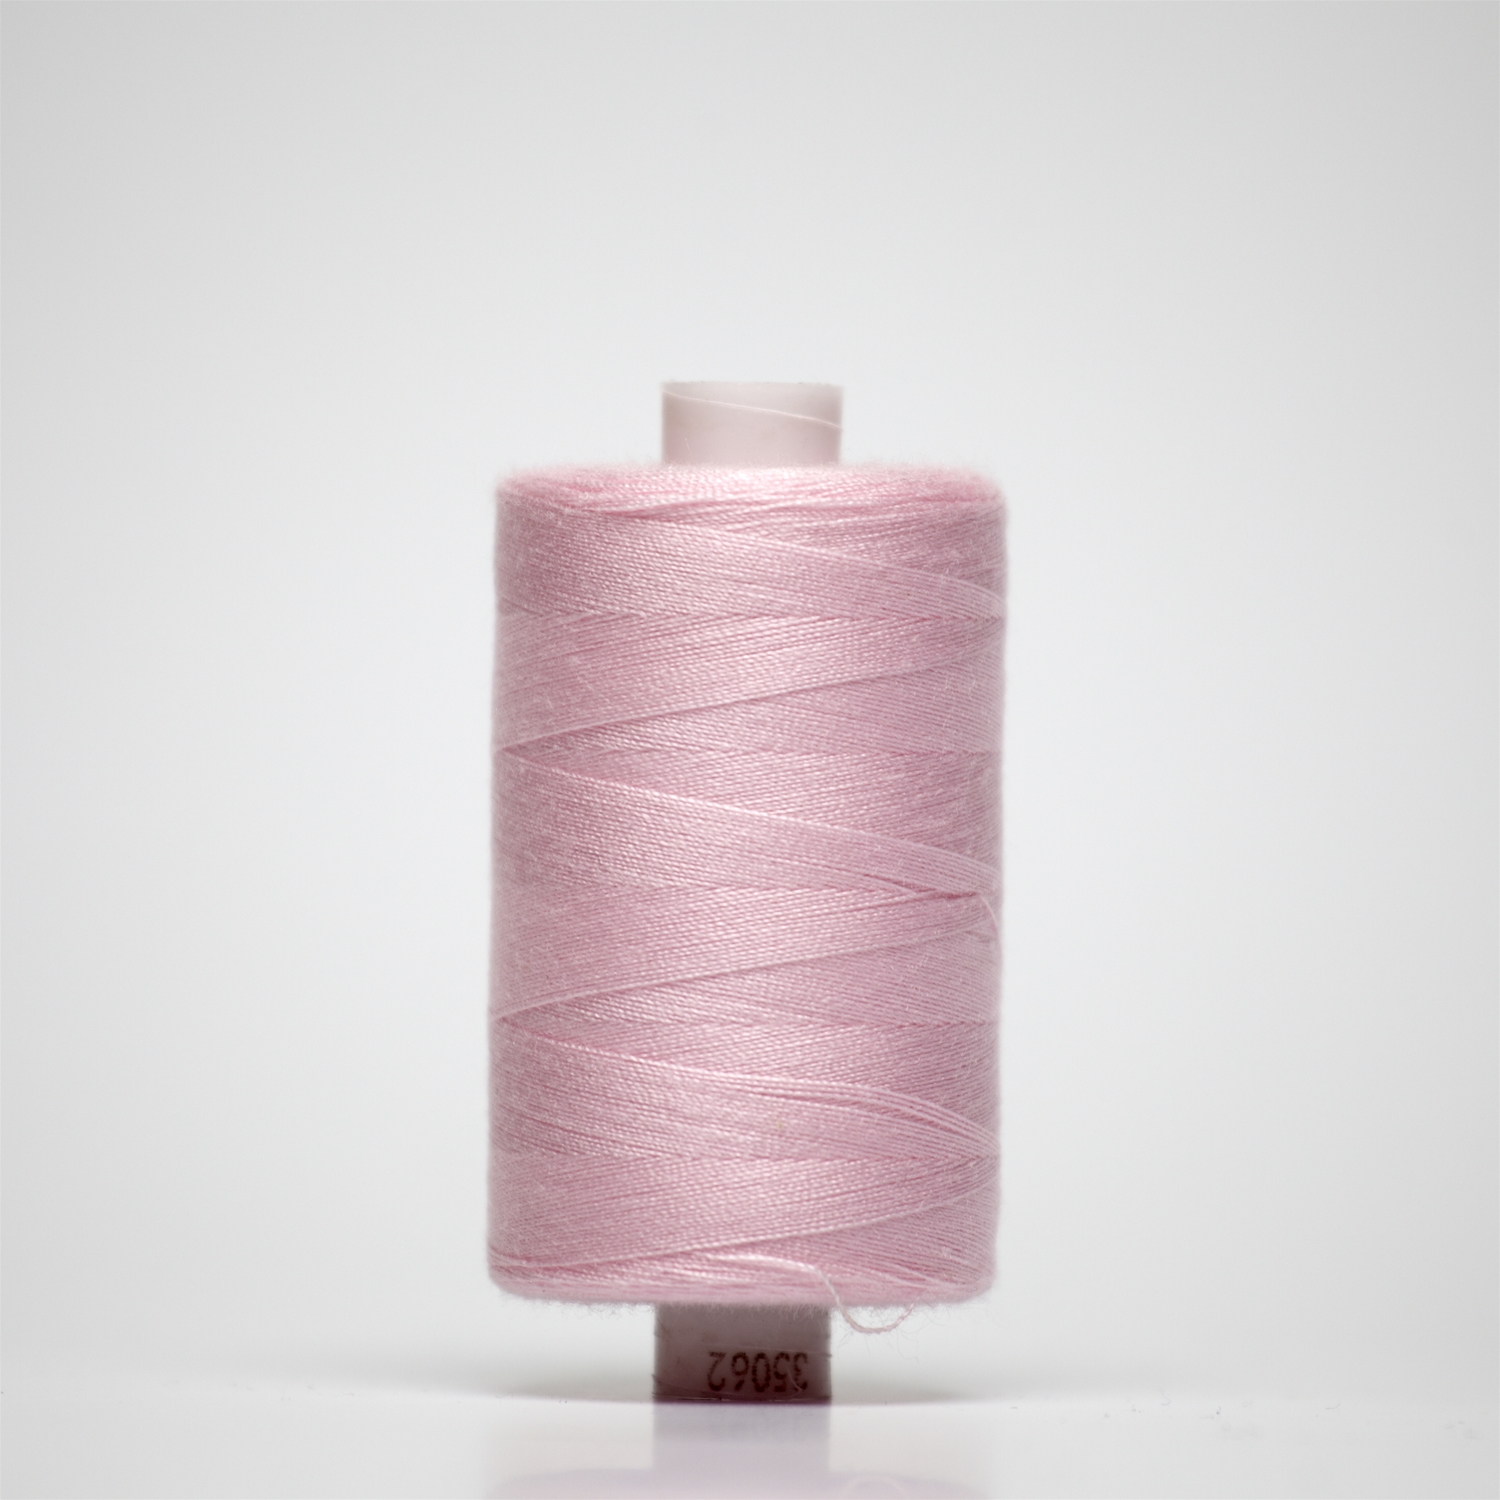 35062 | 1000y Budget Sewing Thread